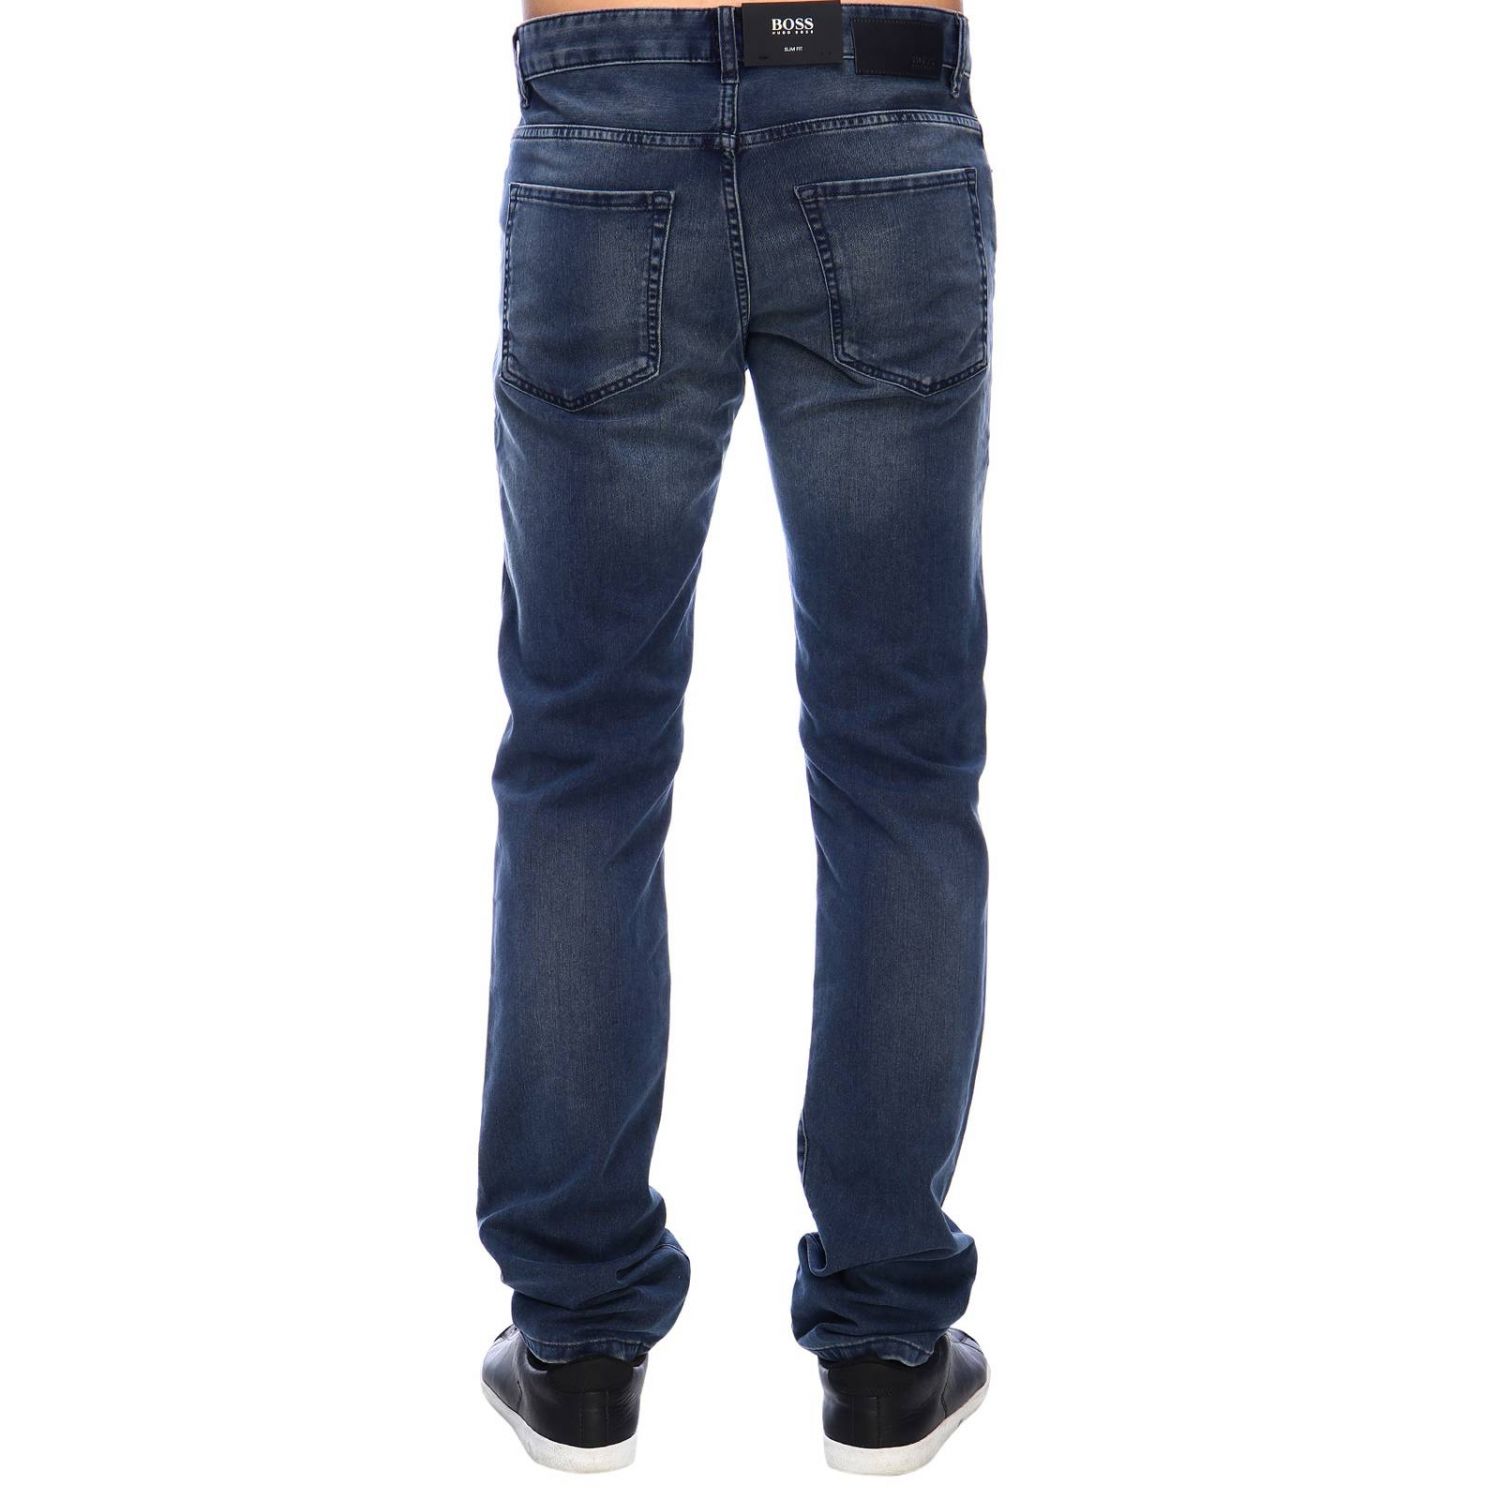 Hugo Boss Outlet: Jeans men | Jeans Hugo Boss Men Denim | Jeans Hugo ...